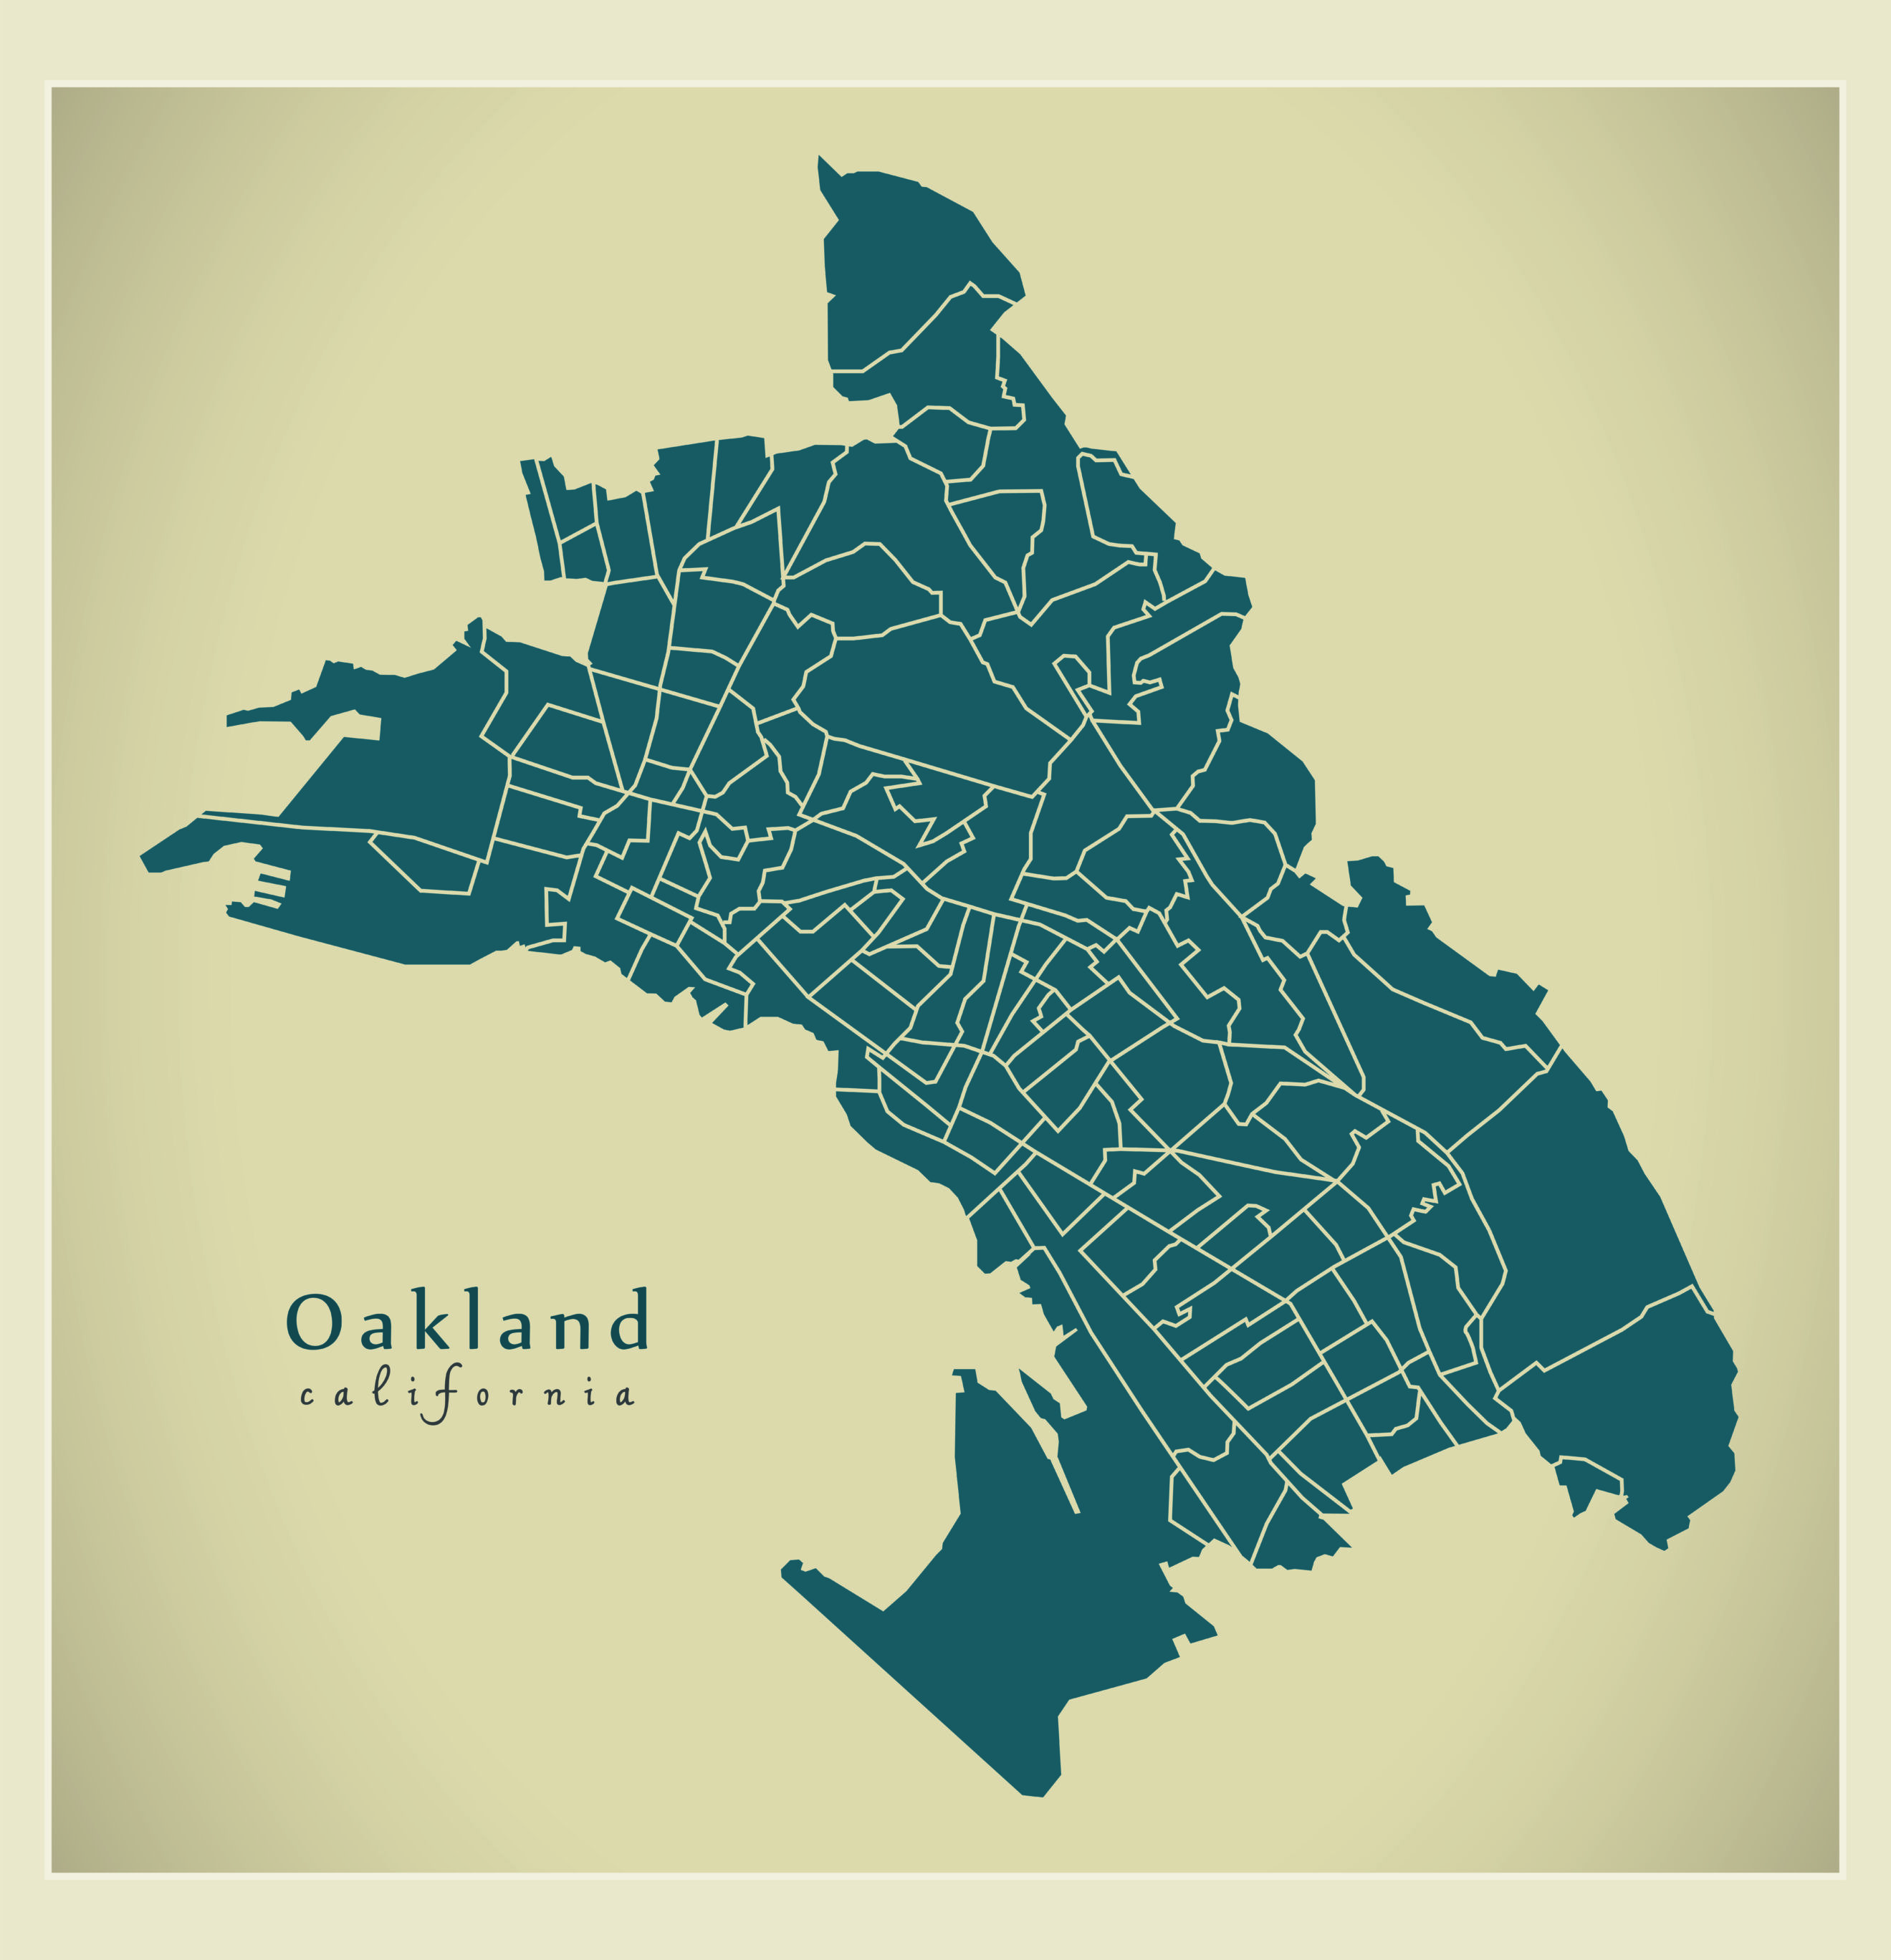 Oakland, California